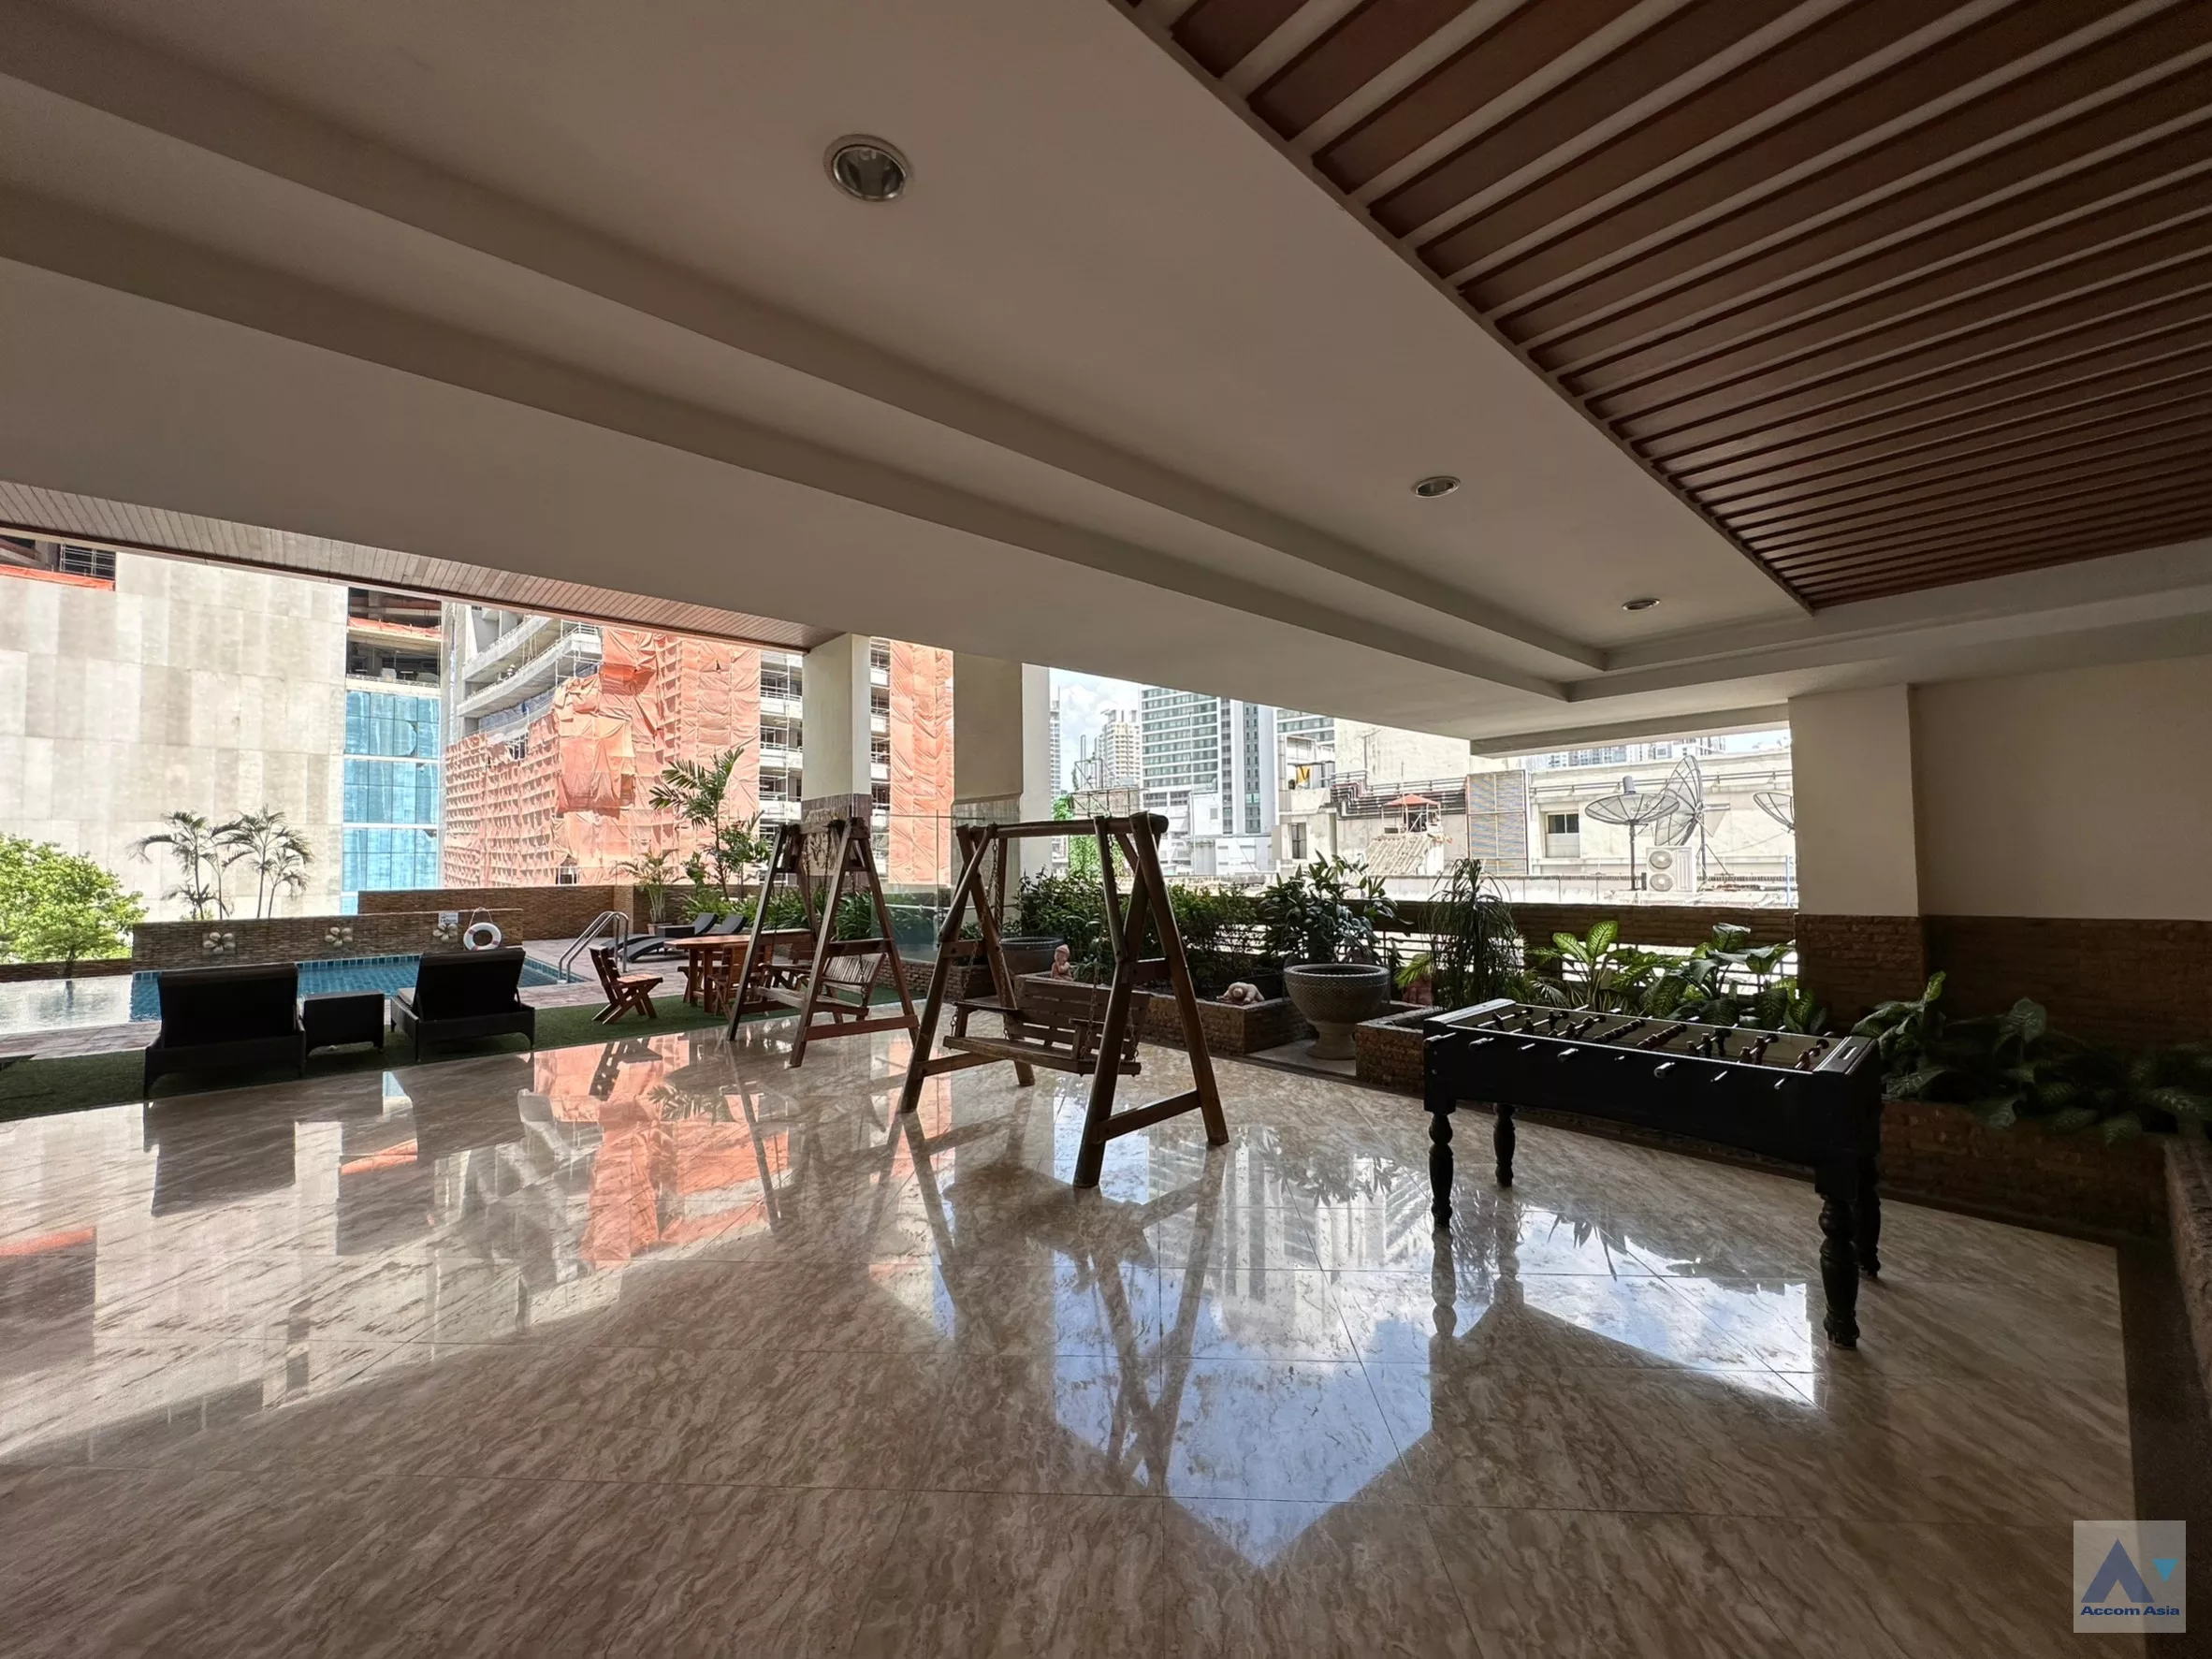 20 High-quality facility - Apartment - Sukhumvit - Bangkok / Accomasia